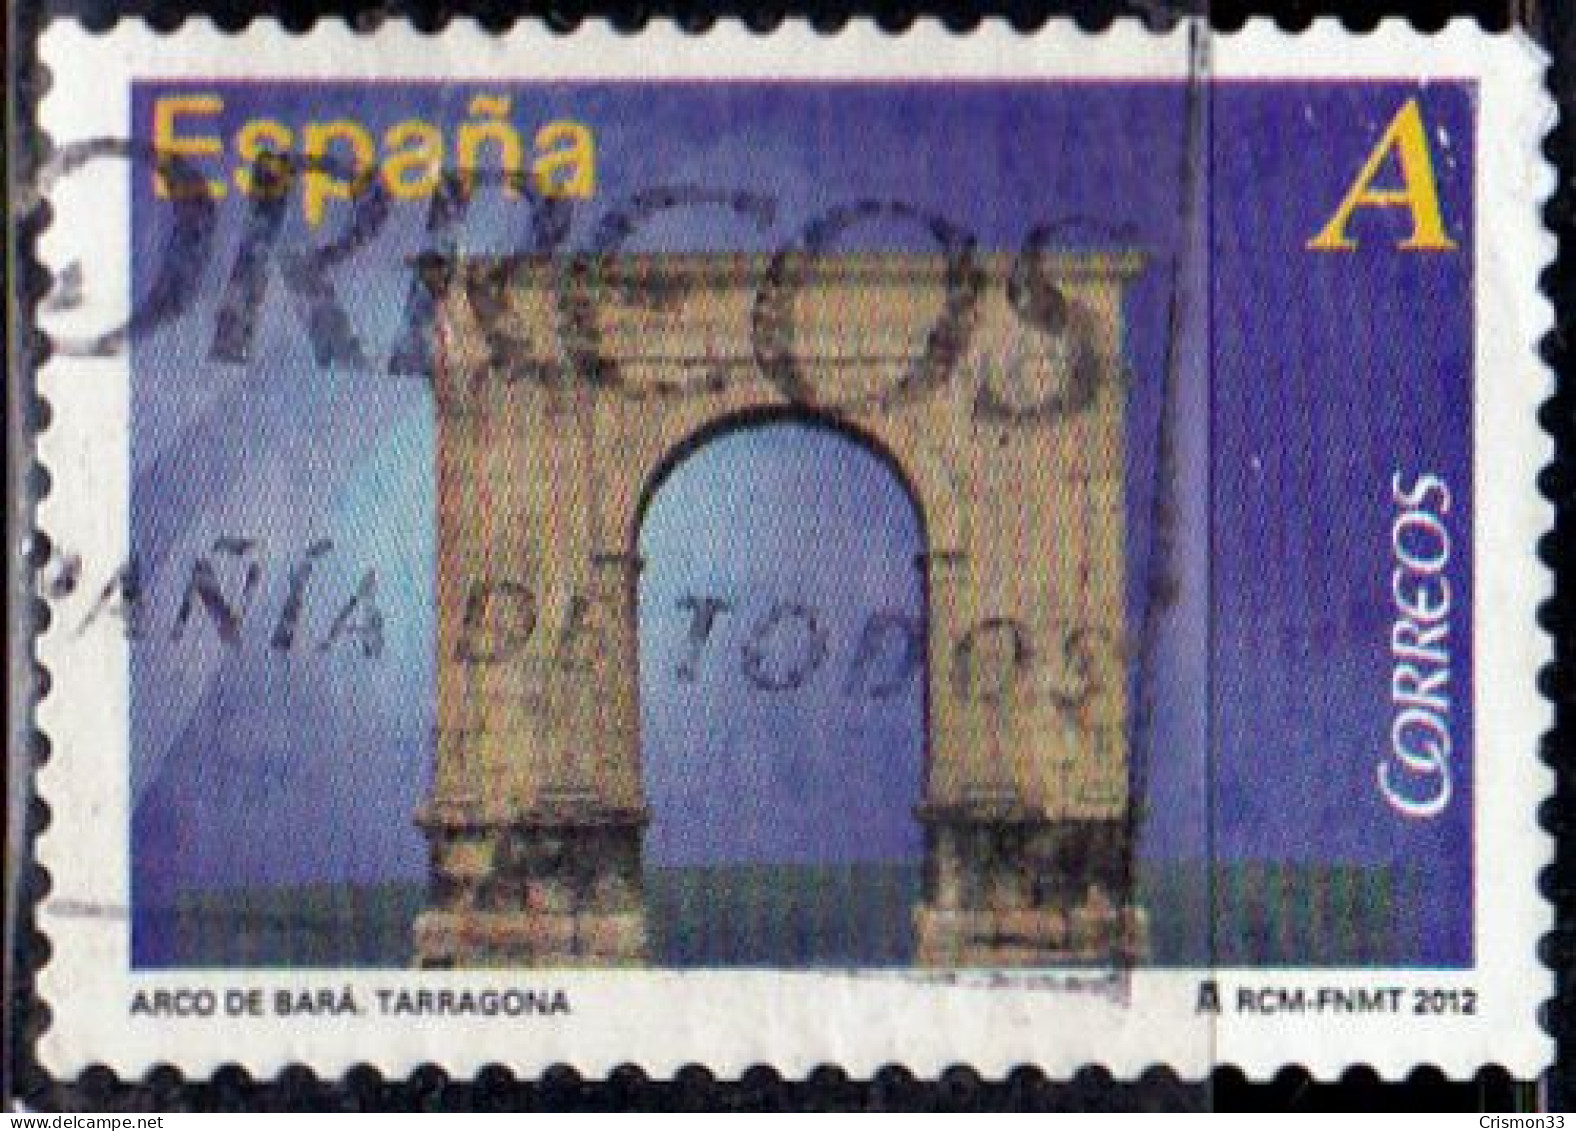 2012 - ESPAÑA - ARCO DE BARA - TARRAGONA - EDIFIL 4688 - Used Stamps